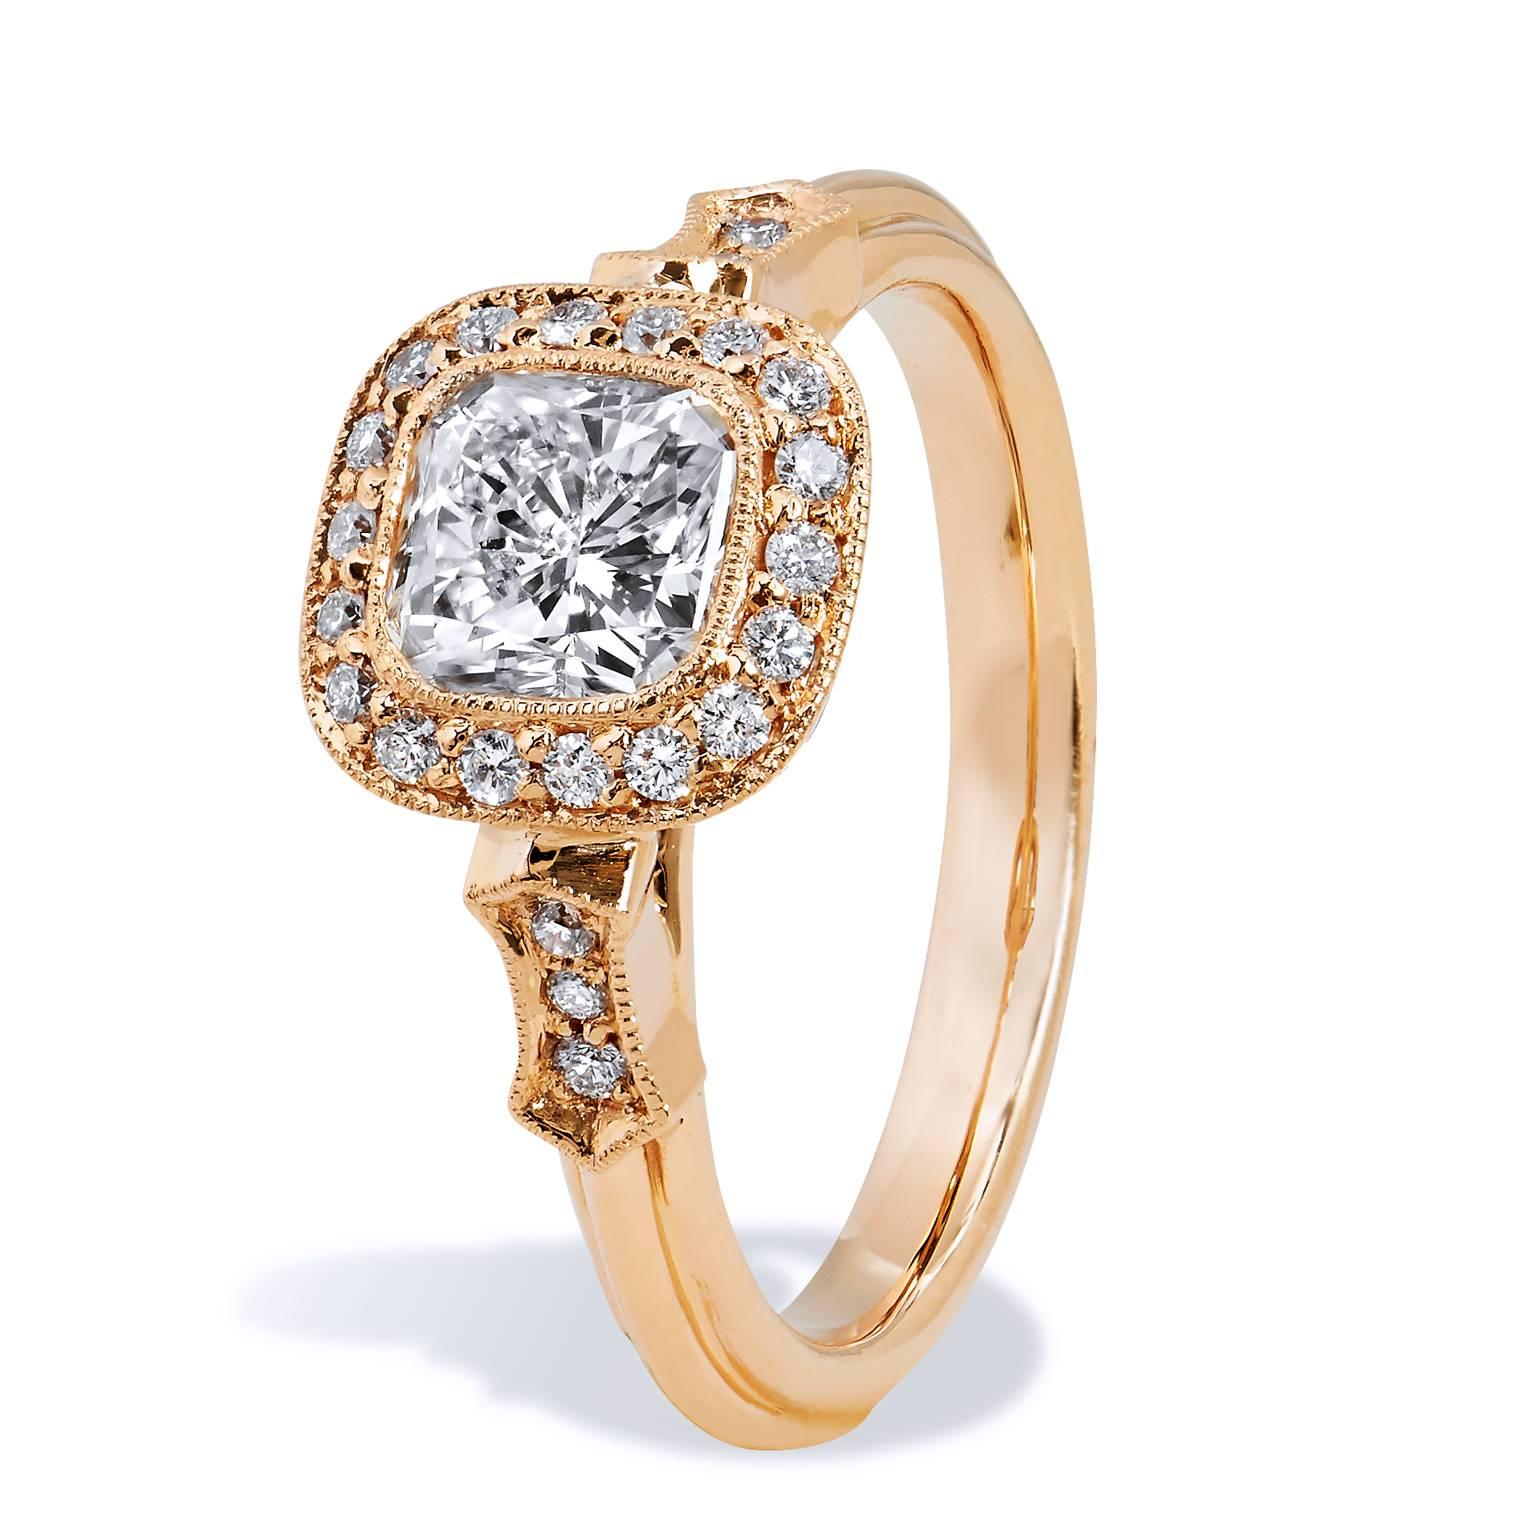 GIA zertifiziert 1,03 Karat Radiant Cut Diamant zwei Ton Gold Verlobungsring

Dies ist ein einzigartiger, handgefertigter Ring von H&H Jewels.  

Dieser Verlobungsring aus 18 Karat Roségold weckt ein Gefühl der Nostalgie. 
Dieser Ring hat eine